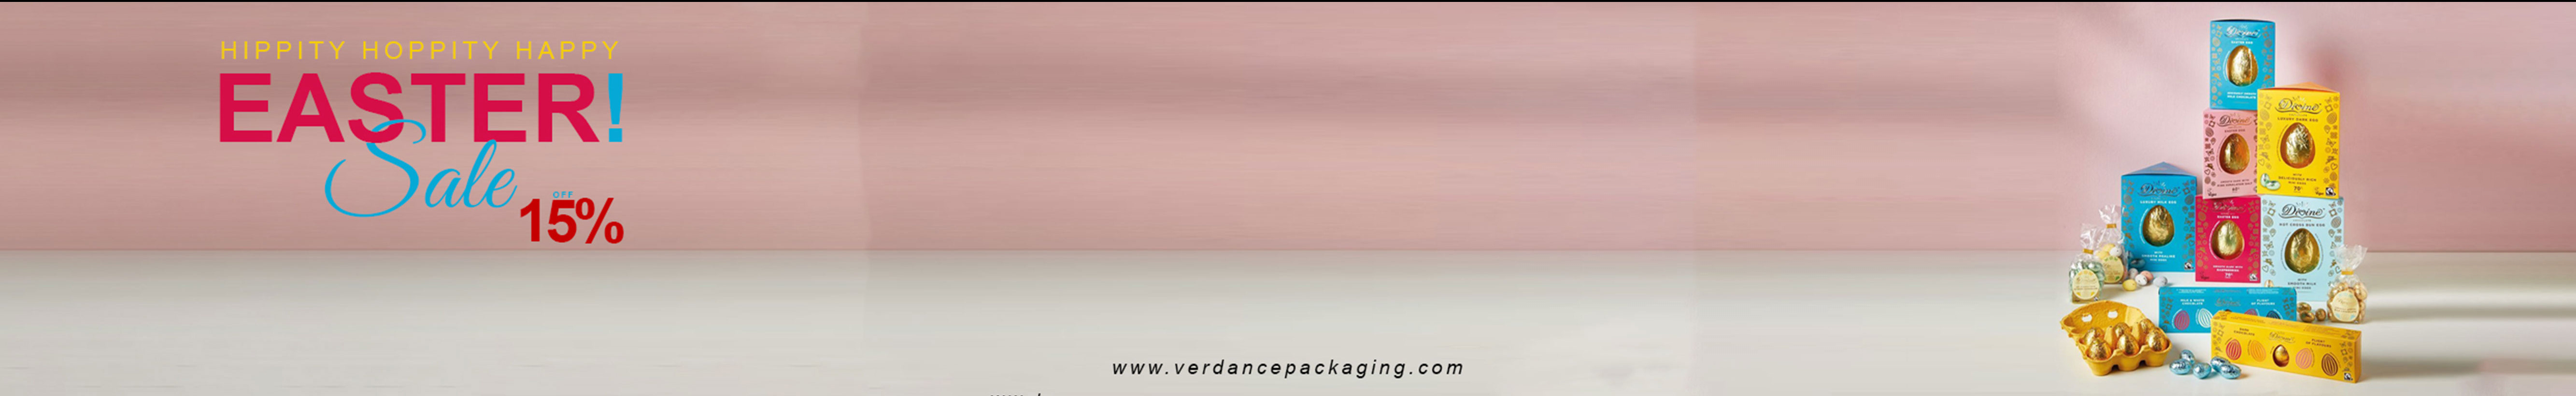 Banner de perfil de Verdance Packaging